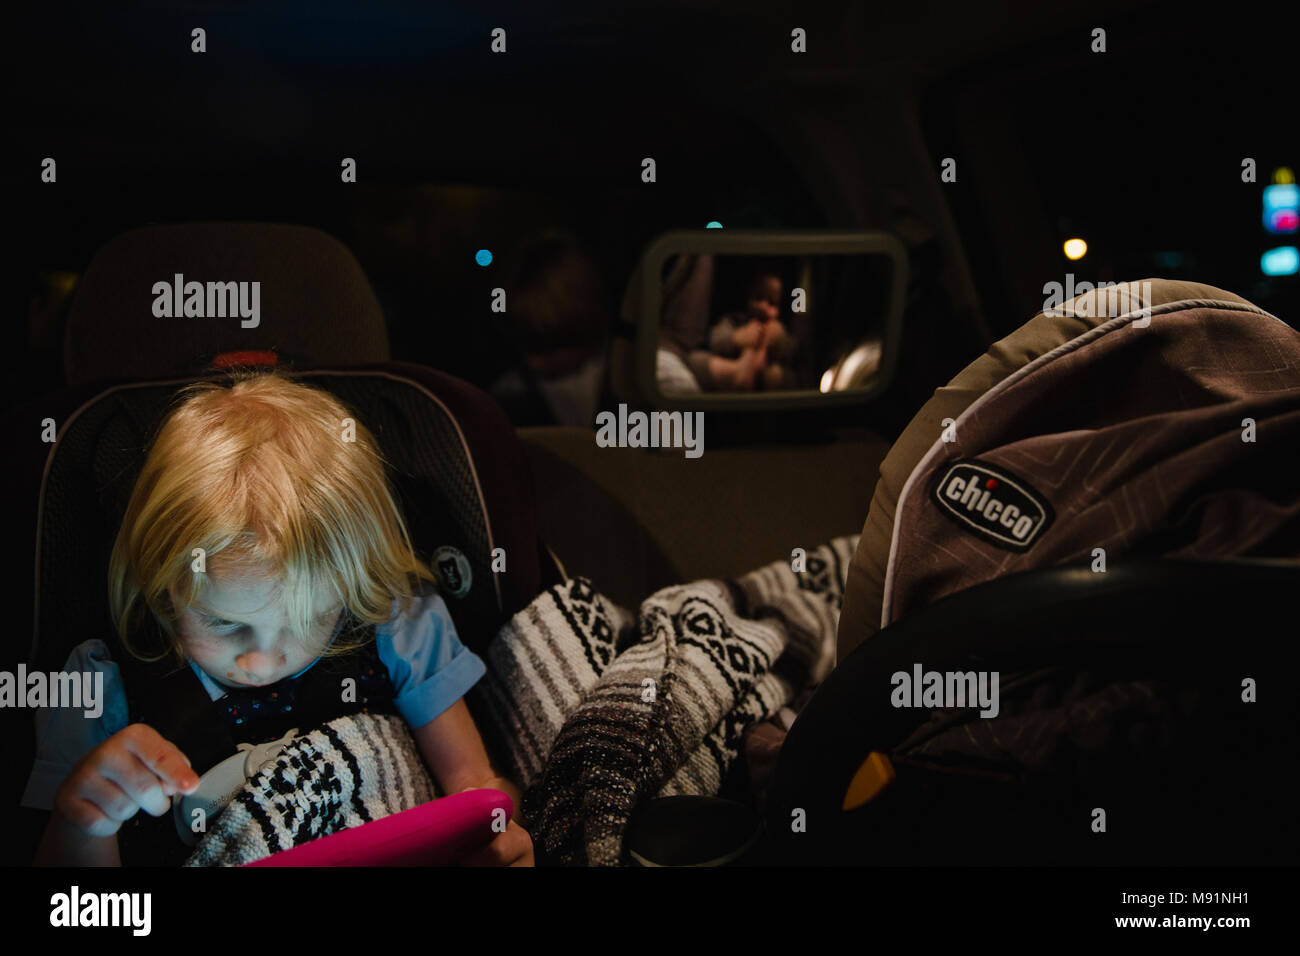 Bambina gioca sul tablet ipad in backseat mentre il bambino dorme in carseat tempo di notte Foto Stock